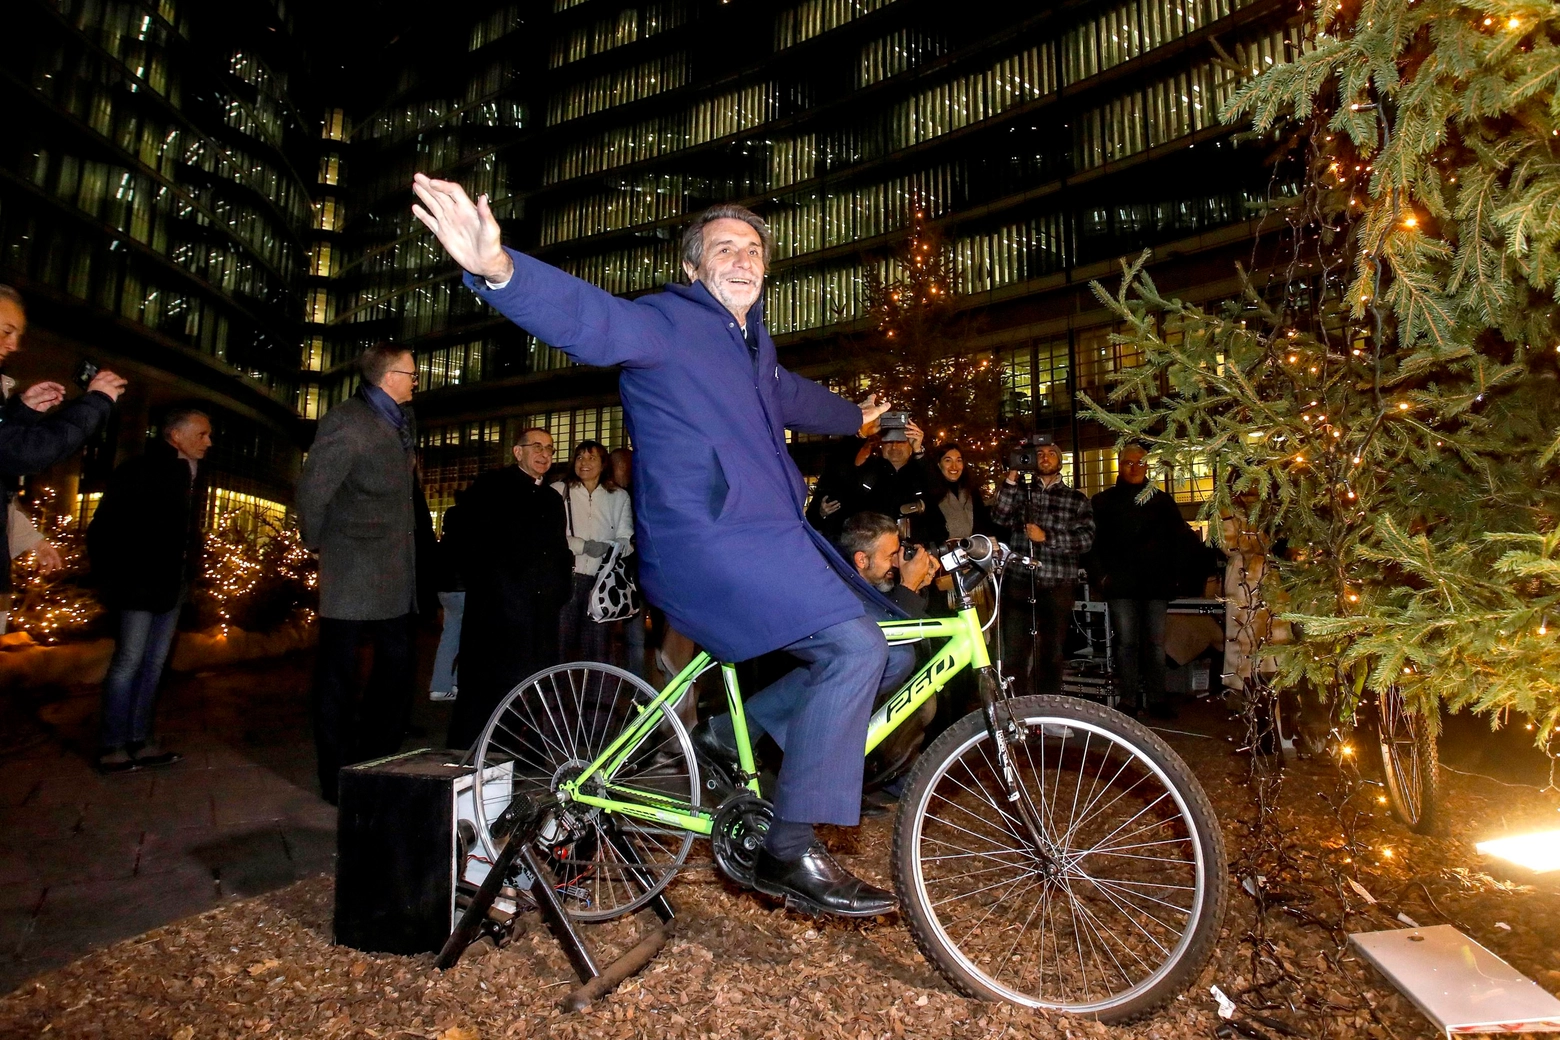 Il Presidente di Regione Lombardia Attilio Fontana pedala per accendere l'albero di Natale